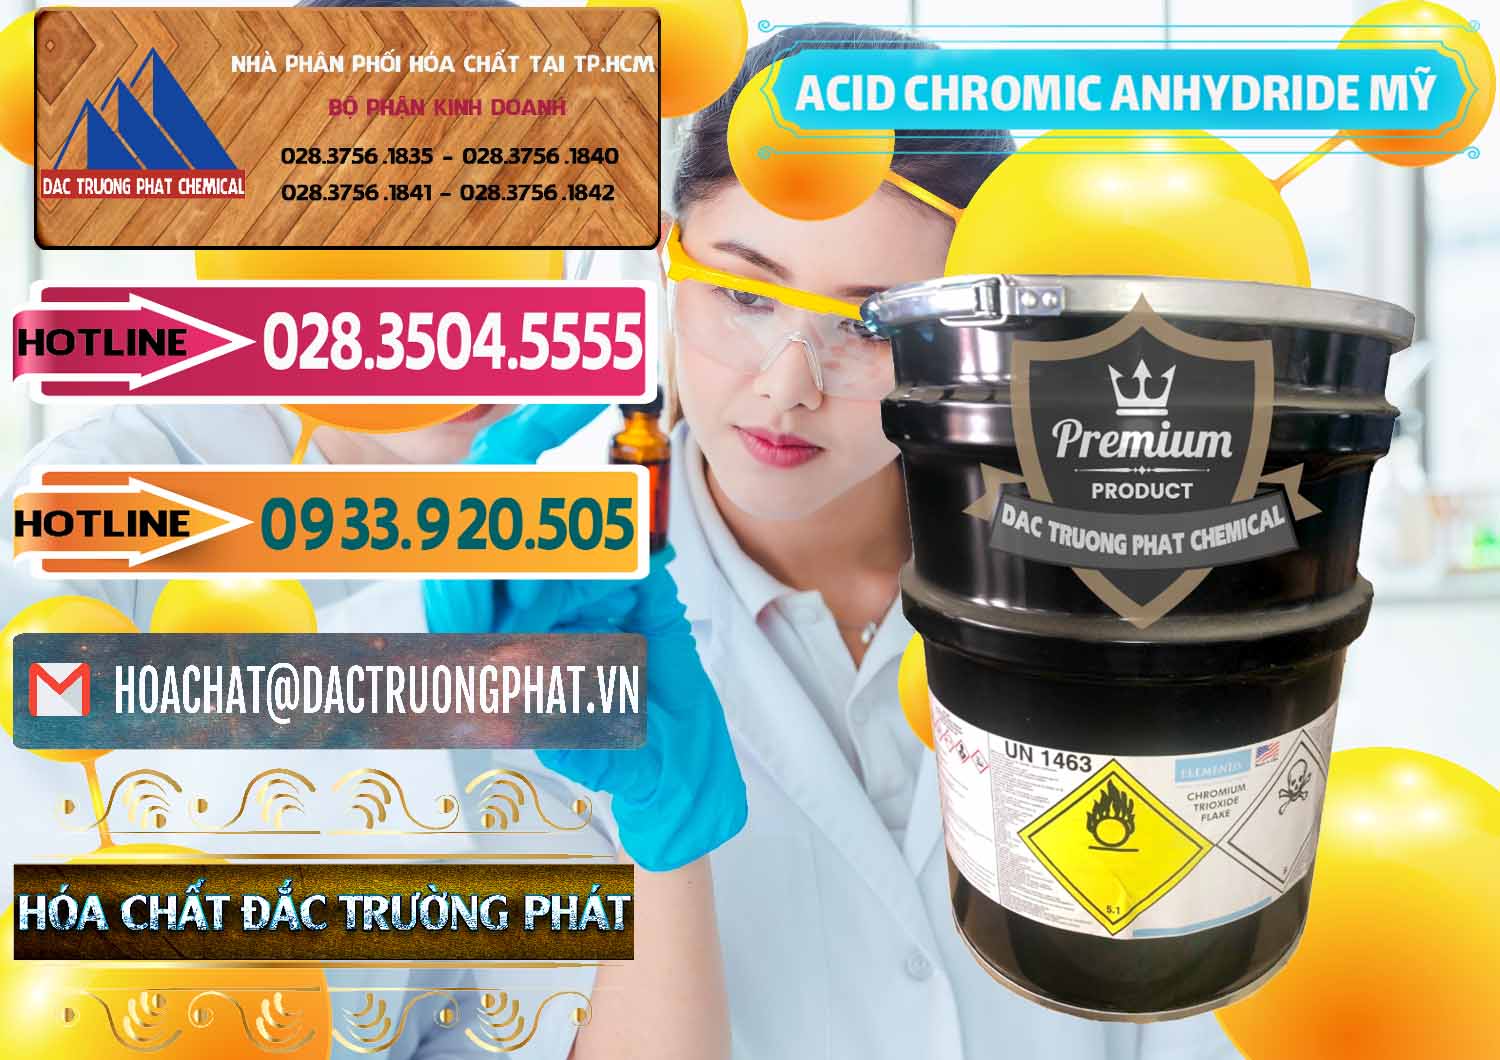 Công ty kinh doanh ( bán ) Acid Chromic Anhydride - Cromic CRO3 USA Mỹ - 0364 - Nhà cung cấp - bán hóa chất tại TP.HCM - dactruongphat.vn